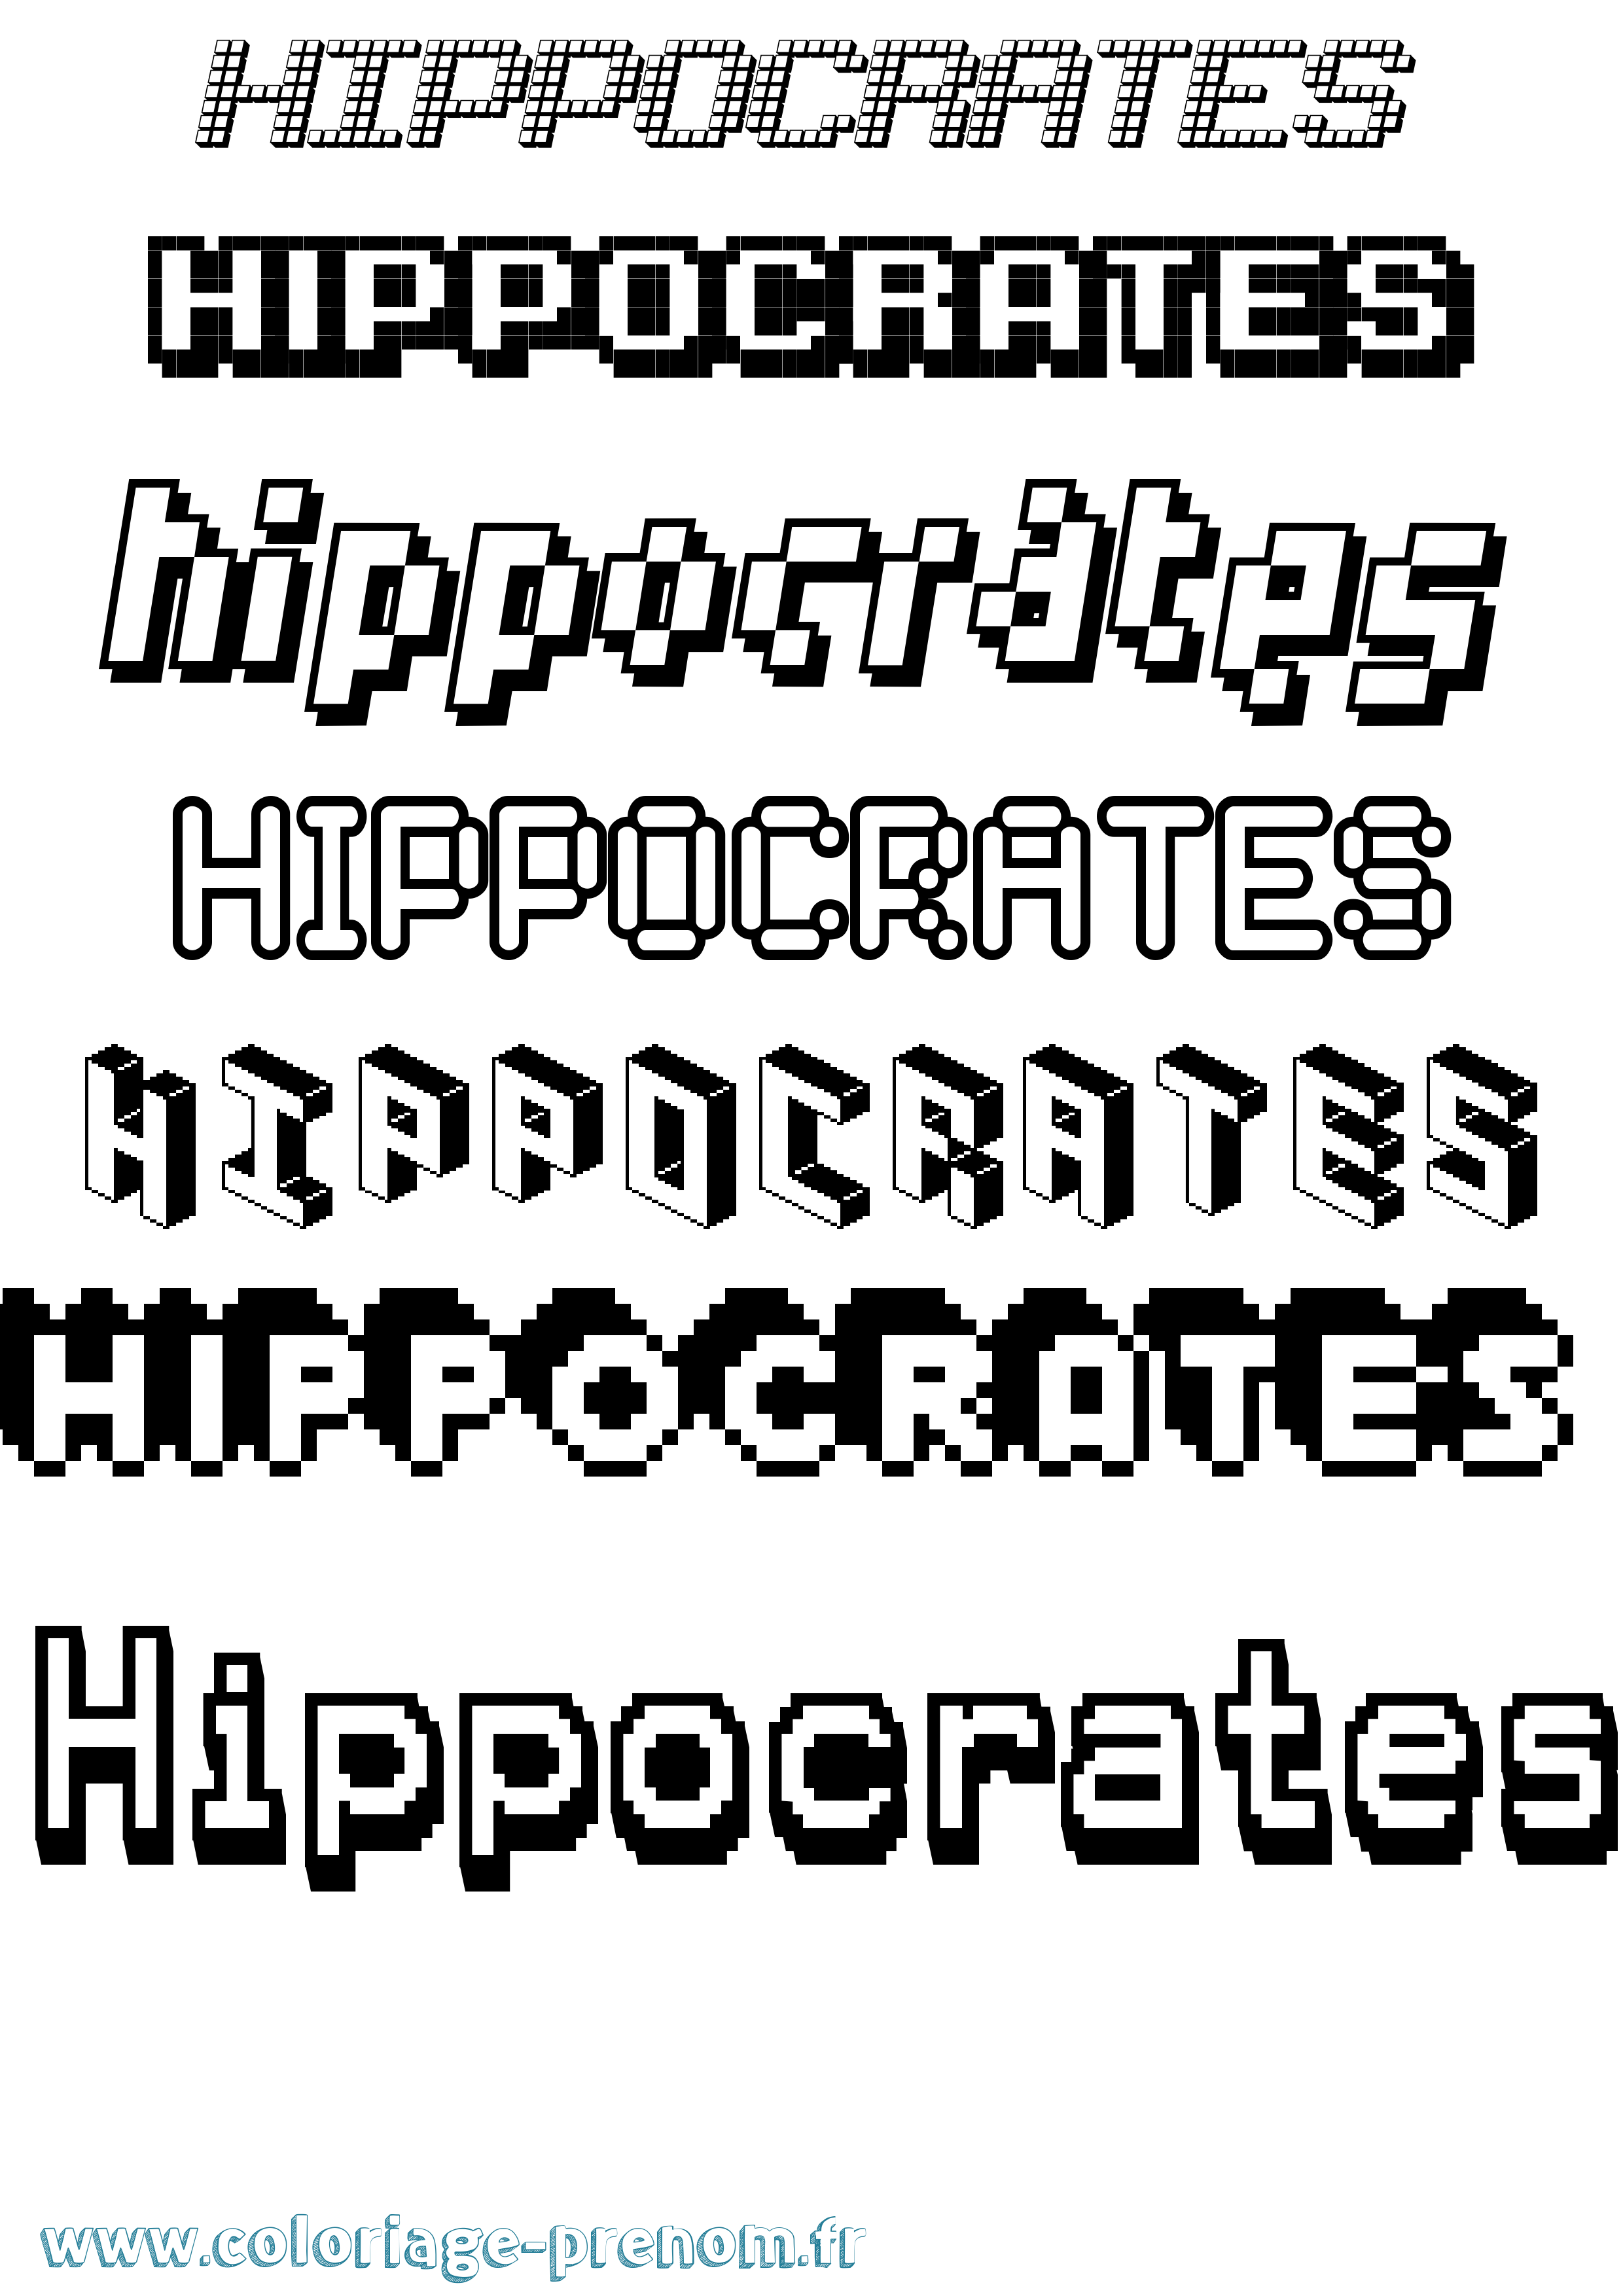 Coloriage prénom Hippocrates Pixel